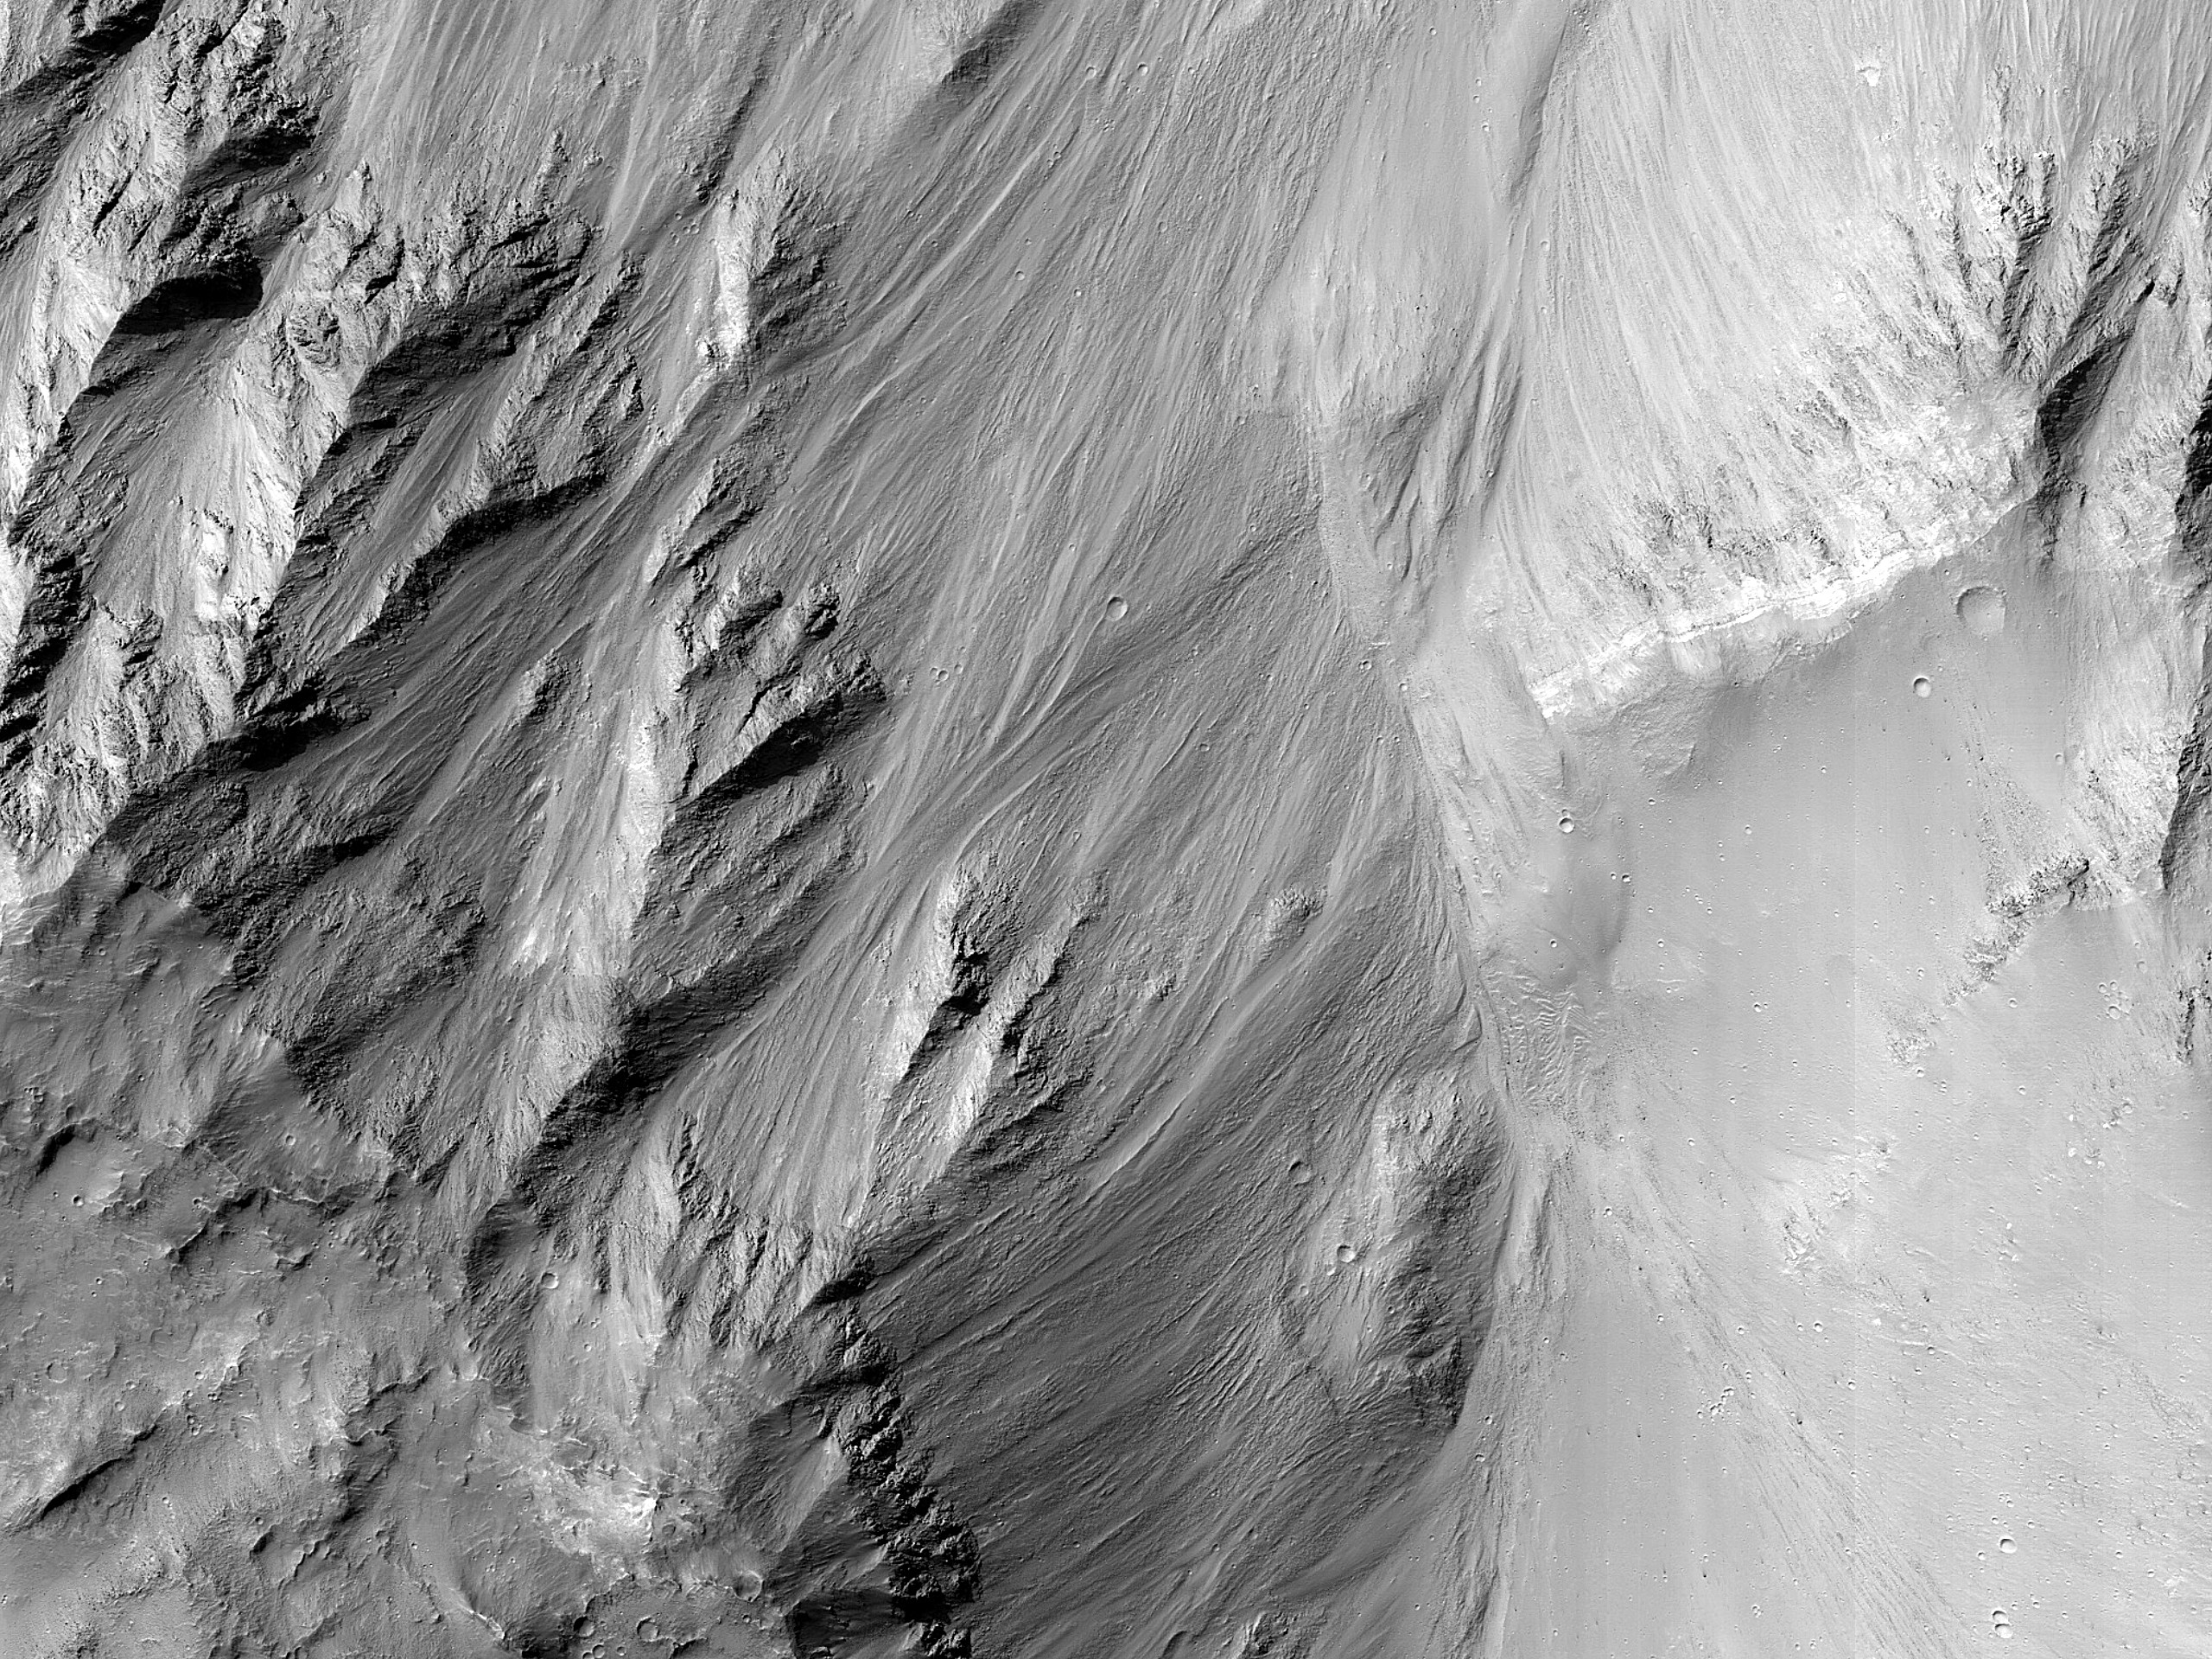 מדרון תלול בעמקי ואלס מארינריס (Valles Marineris)